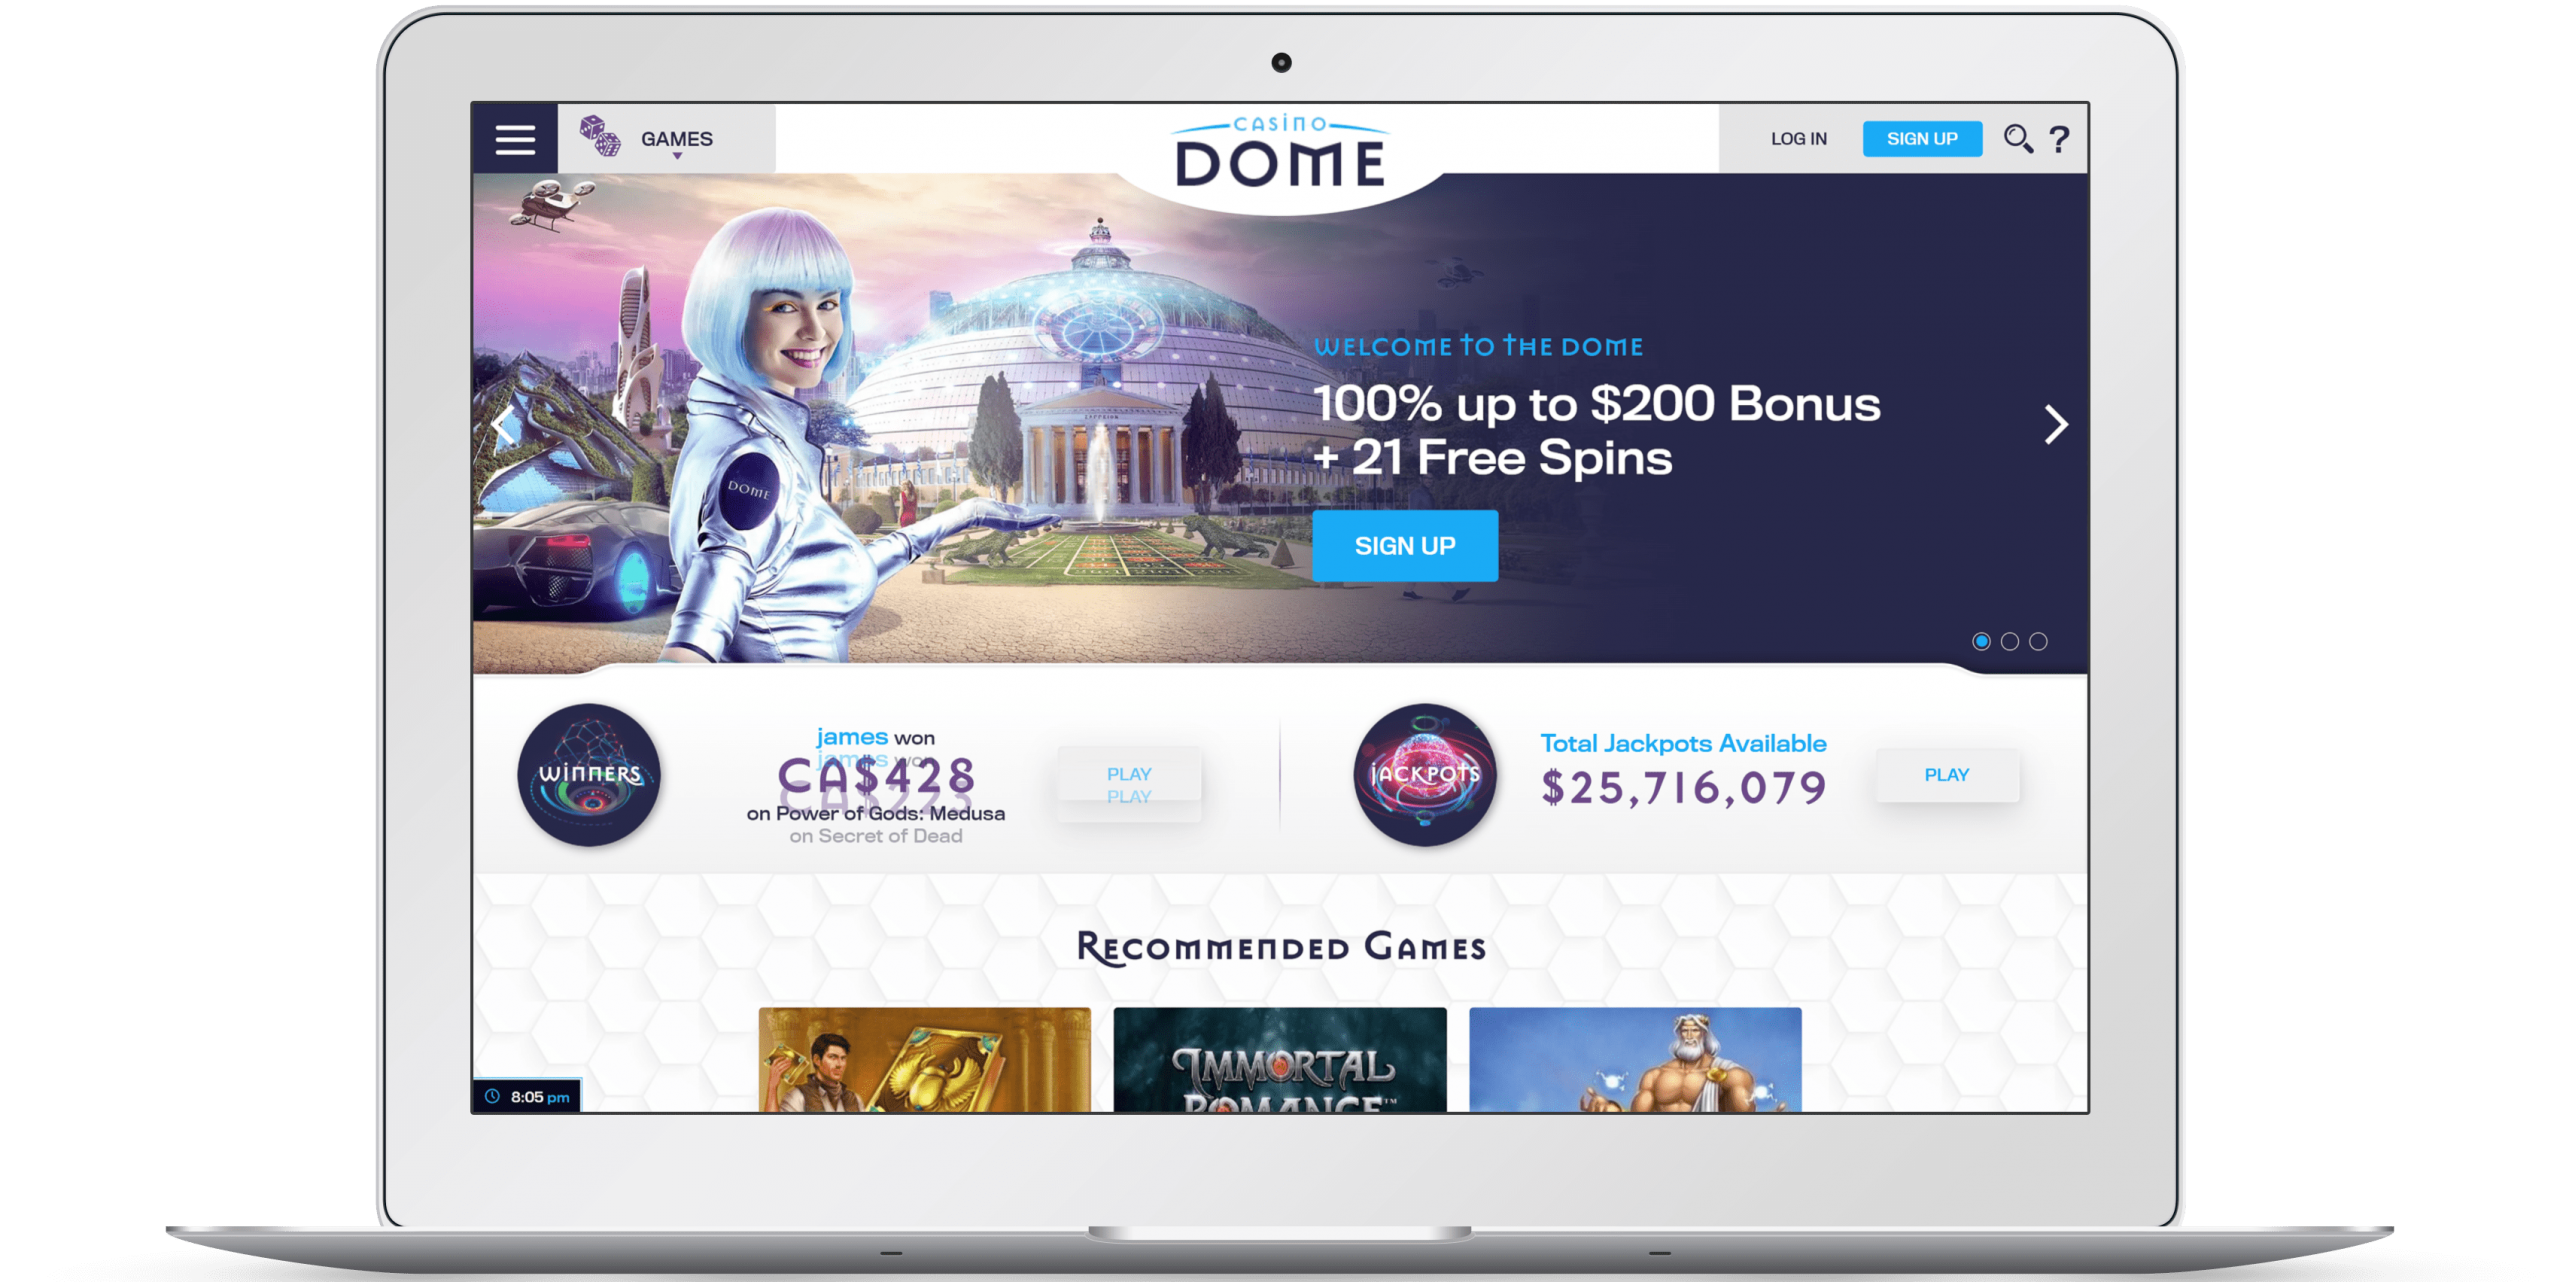 Casino Dome Online Casino